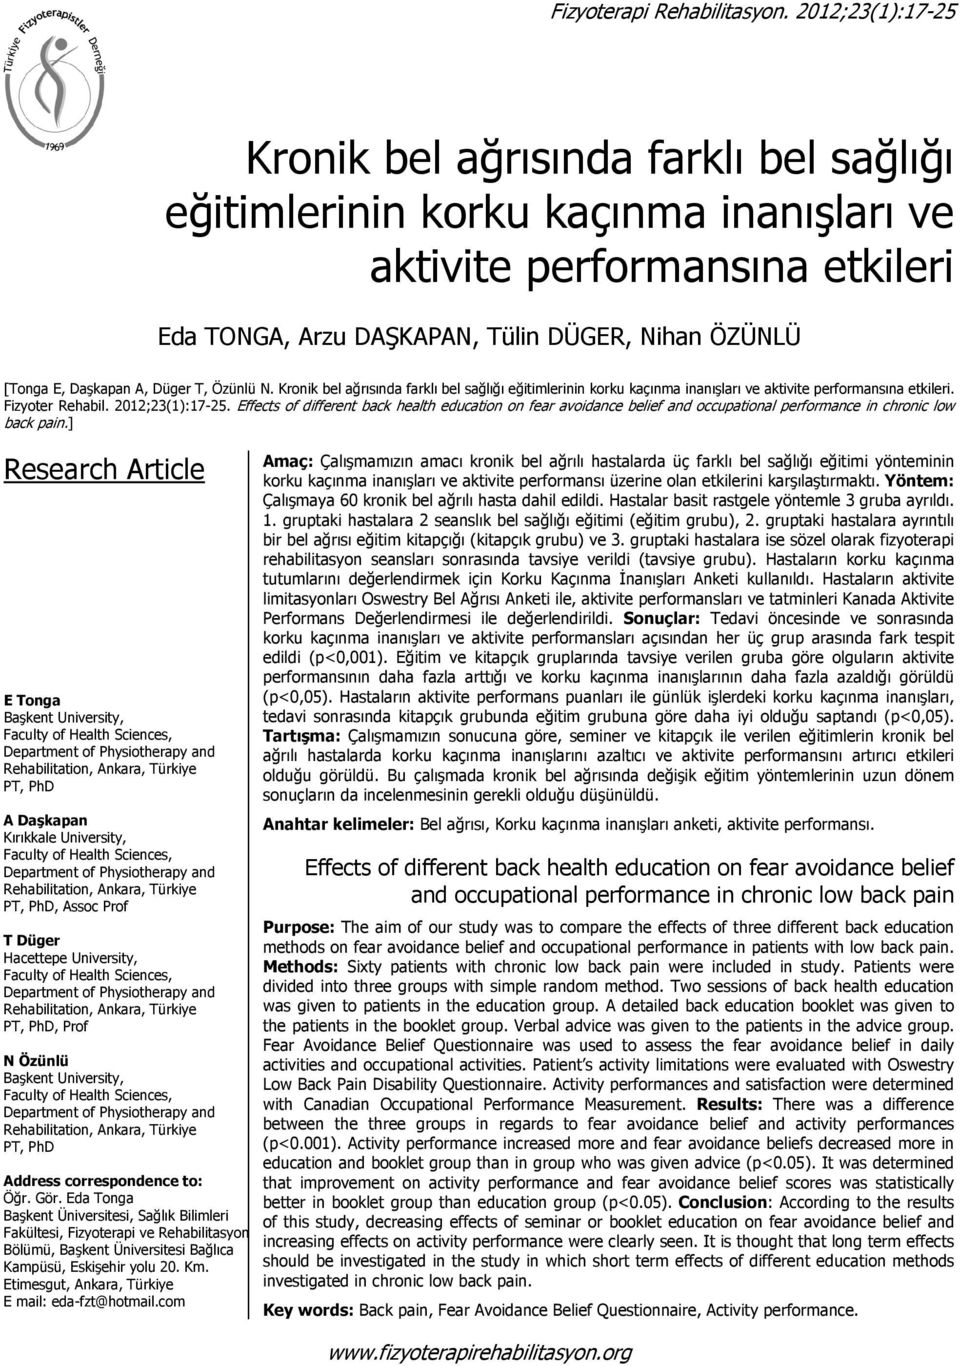 Daşkapan A, Düger T, Özünlü N. Kronik bel ağrısında farklı bel sağlığı eğitimlerinin korku kaçınma inanışları ve aktivite performansına etkileri. Fizyoter Rehabil. 2012;23(1):17-25.